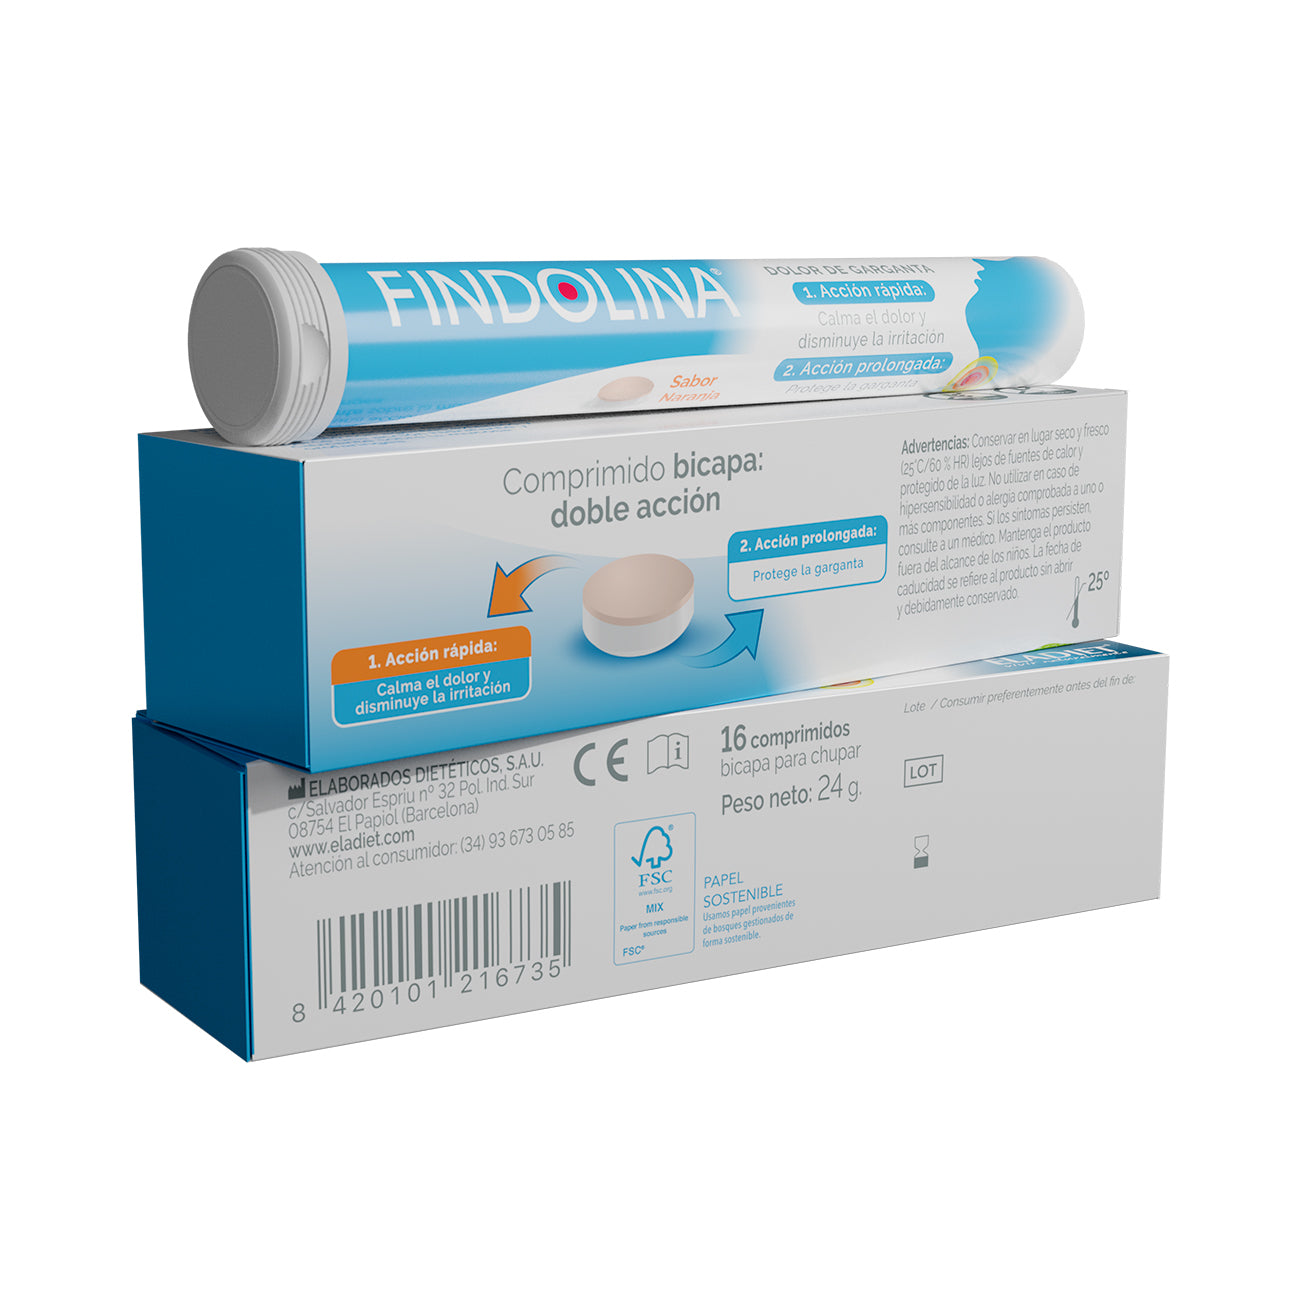 Eladiet-Findolina-Garganta-16-comprimidos-en-biopharmacia.shop